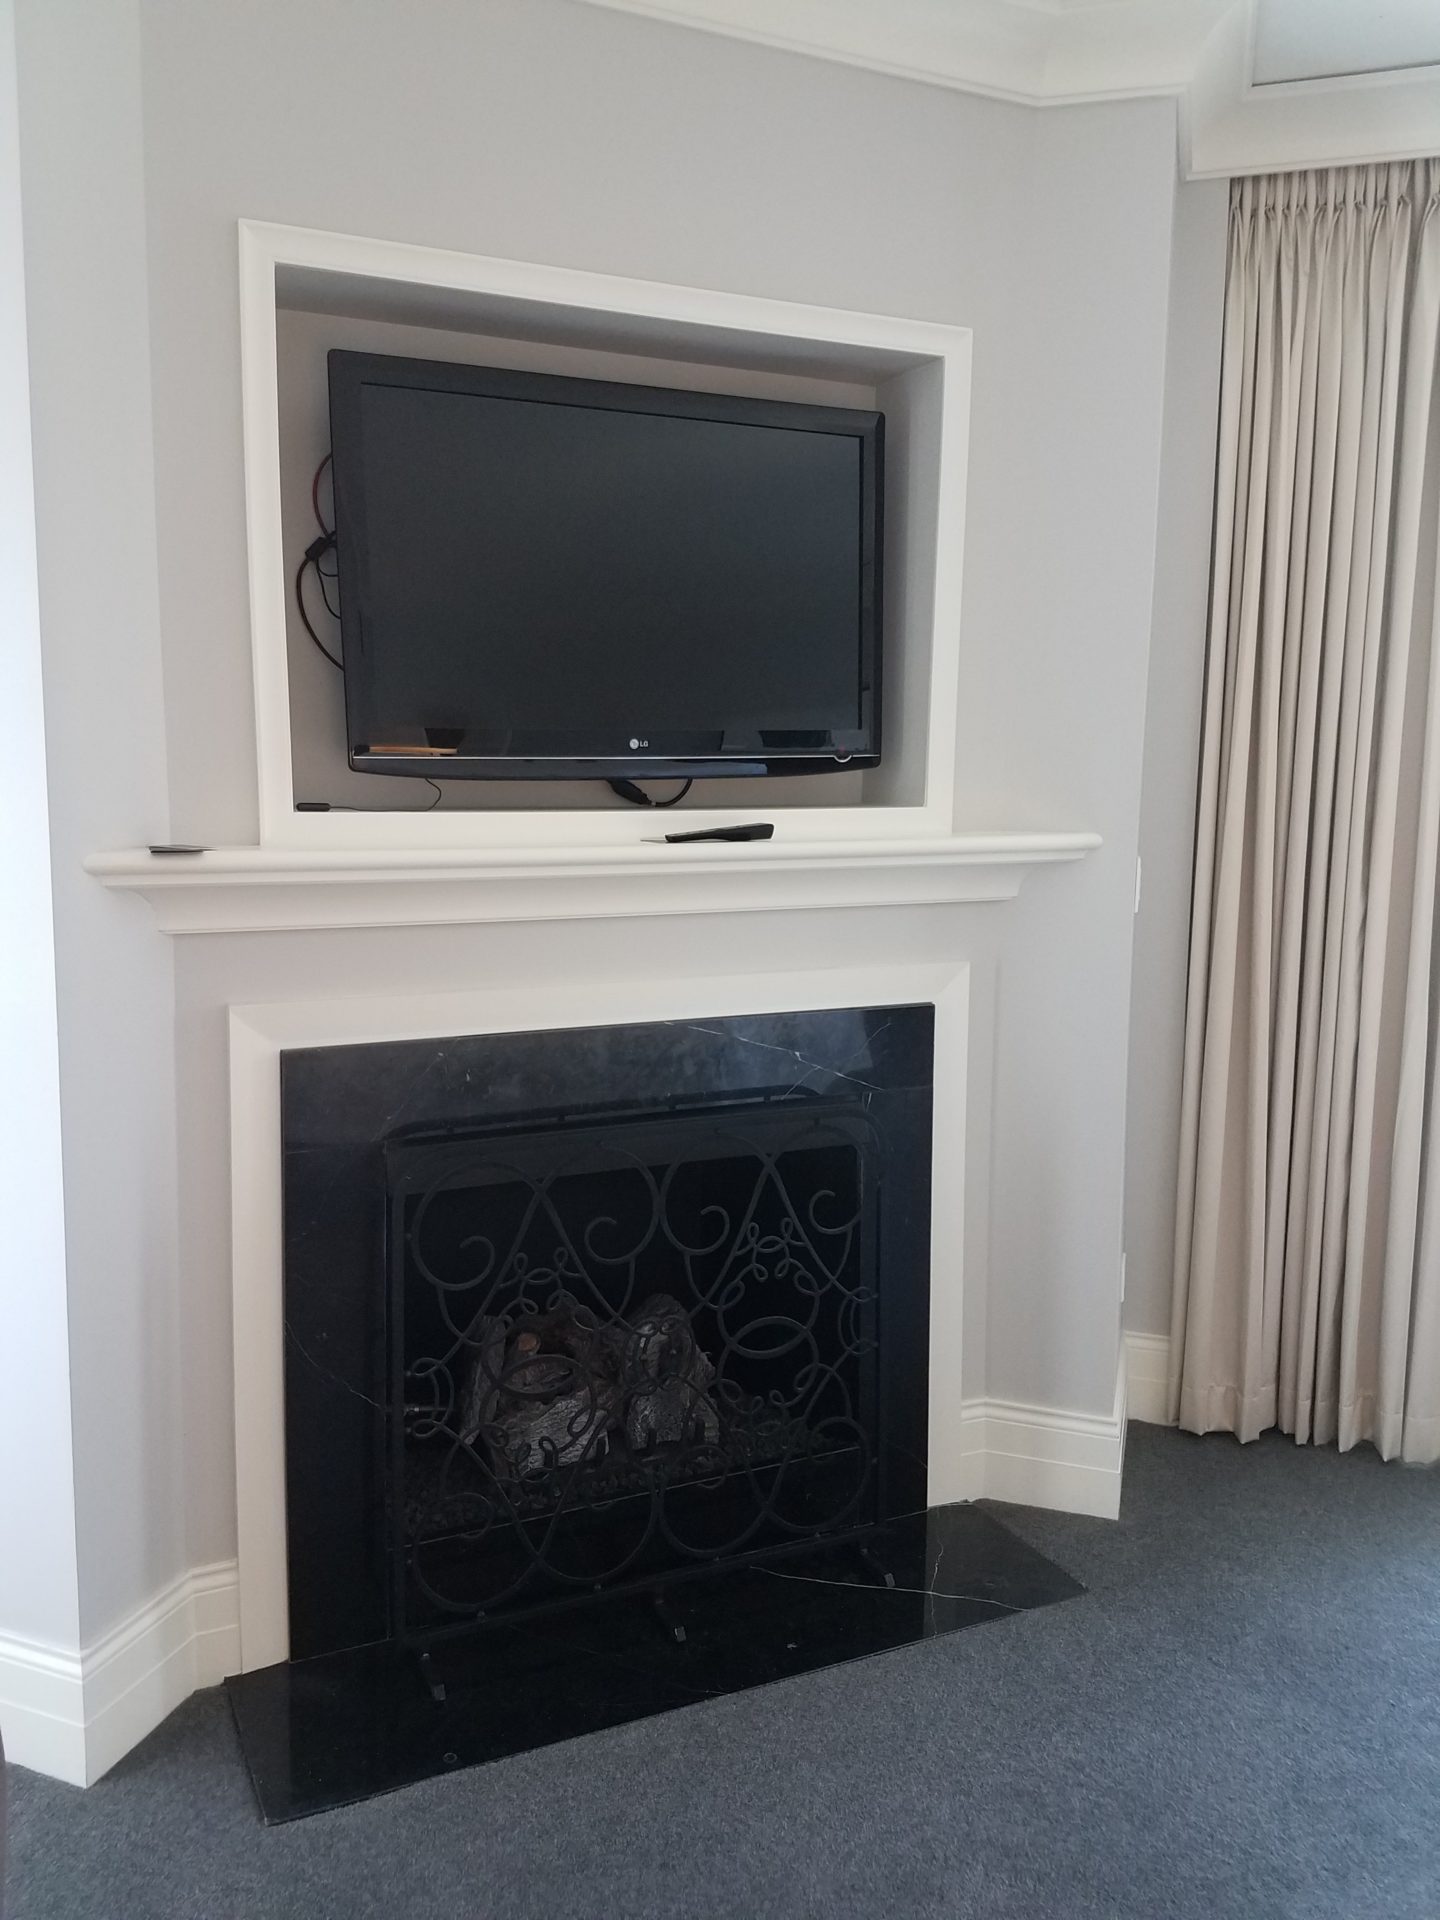 a tv on a fireplace